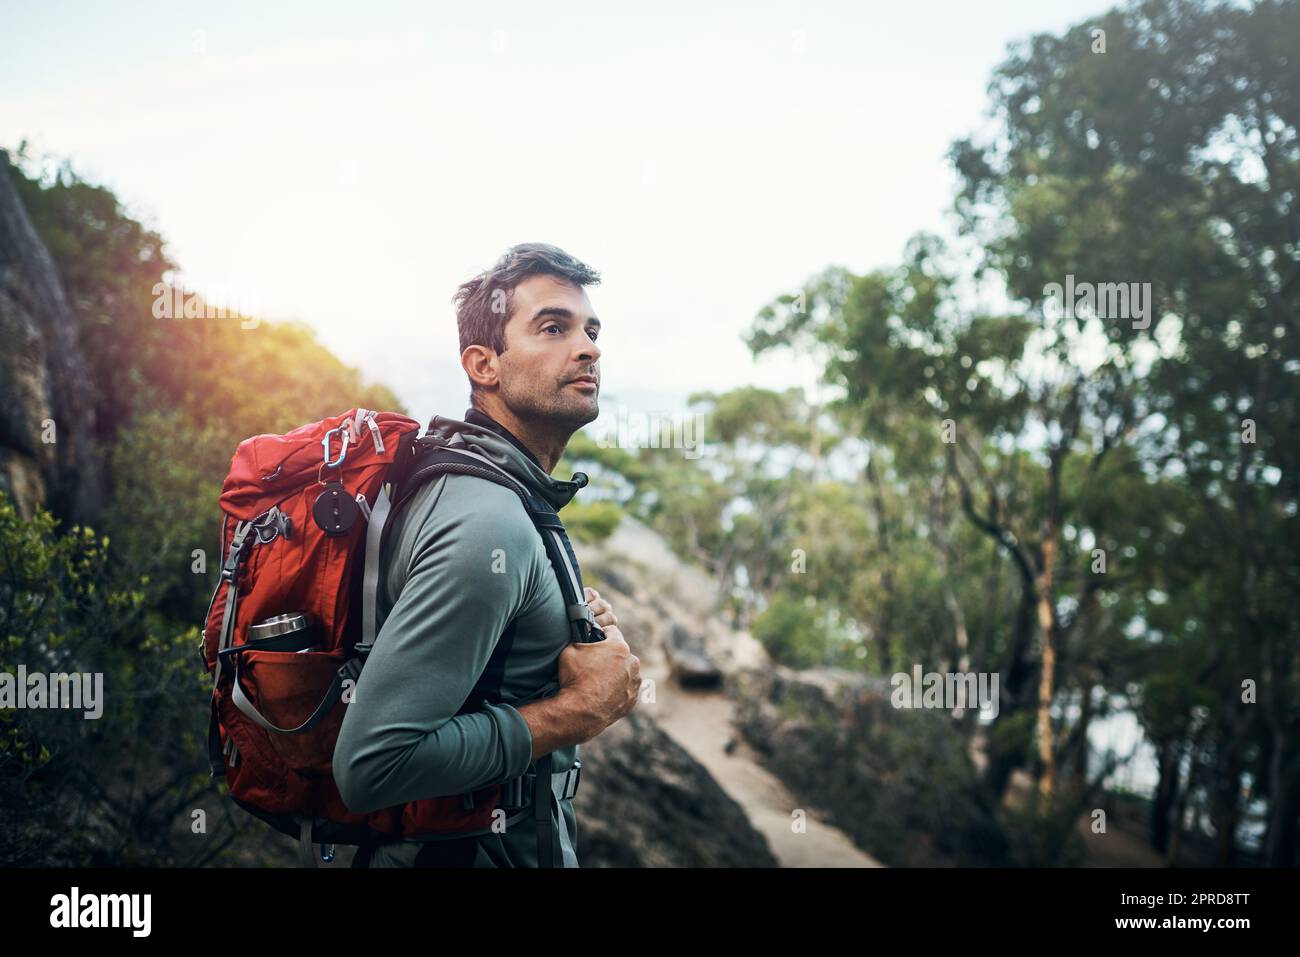 La naturaleza tiene tanta belleza: Un joven alegre que lleva una mochila y listo para subir una montaña. Foto de stock